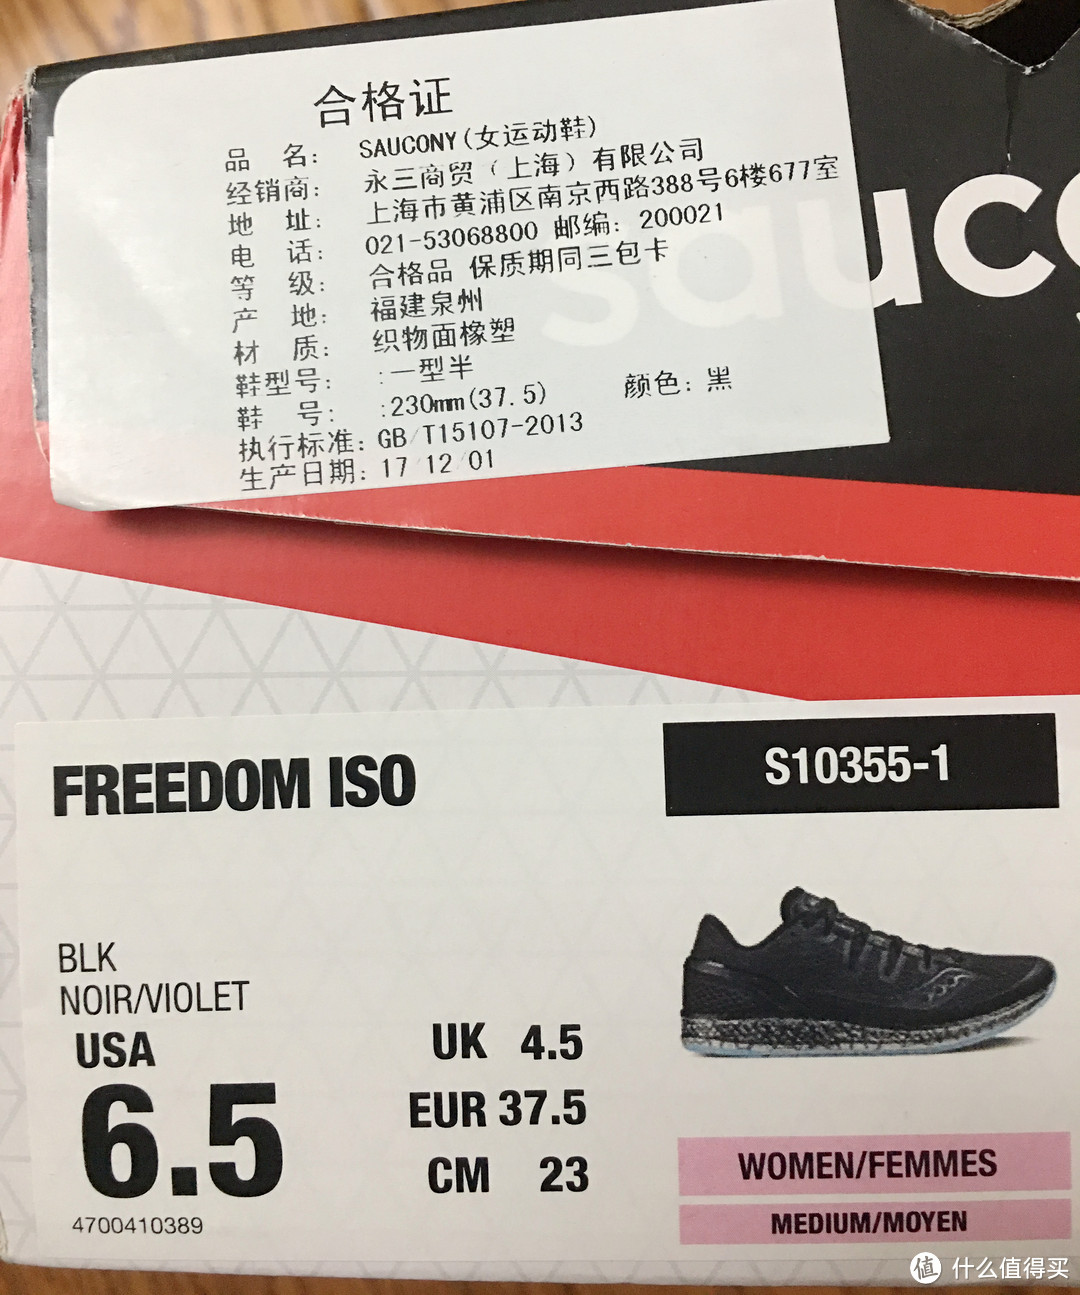 鞋子的产品信息，显示鞋子是欧码37.5，中国码23码，生产日期是一年前了。